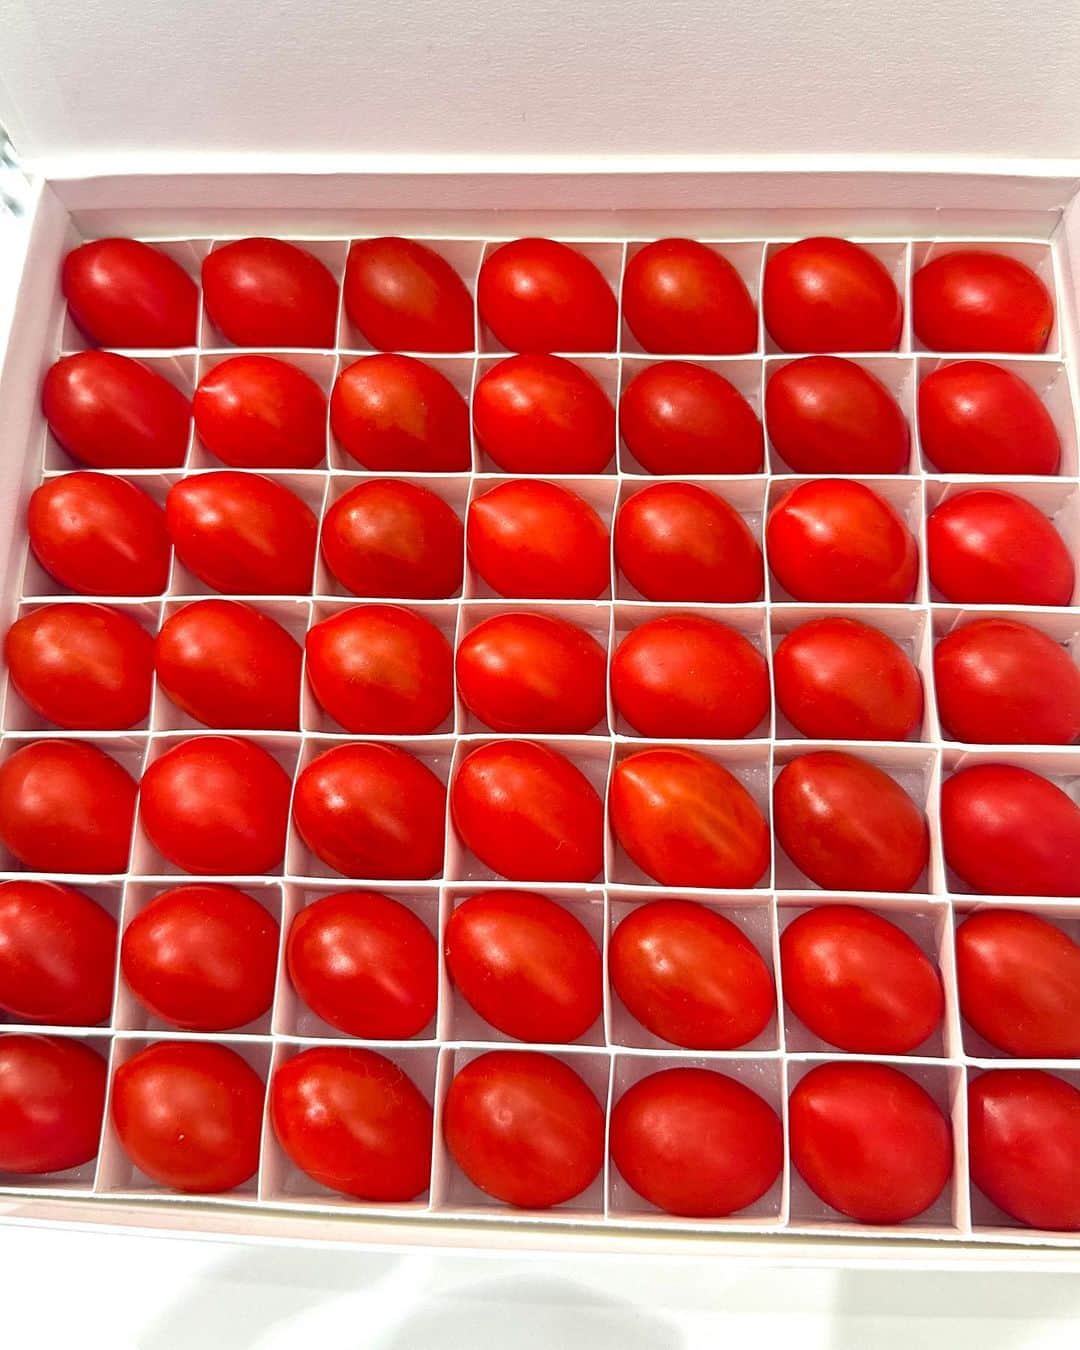 #ぶらエディターズ GINZA SIX オフィシャルさんのインスタグラム写真 - (#ぶらエディターズ GINZA SIX オフィシャルInstagram)「OSMIC FIRST B2F @osmic_foods   一粒口にしたら、「これがトマト？」と誰もが驚く究極の甘さを誇るフルーツミニトマトブランド、OSMIC FIRST（オスミック ファースト）をご存知でしょうか？🍅✨   収穫後に一粒一粒センサーで糖度を測定し、11度以上を満たす高糖度のフルーツミニトマトだけを提供するオスミック ファーストは、今までGINZA SIXで2回のPOP UP STOREを開催👏🏻その度に多くの反響と好評を得て、ついに常設店が6/24（土）にOPENしました（📹1枚目）！🎉   オスミック ファーストは、代表の中川英之さんが日本の農業の商慣習や流通方法に疑念を抱いたことからはじまります🍅🌱   「一般的に美味しい野菜とは、旬の野菜を指します。旬の食材は生産量が多いので値段が安く、逆に旬ではない季節は値段が高いという構図は、誰もが当たり前のように思っているかもしれません。でもそれでは“美味しい”という価値は、どこに行ってしまったのか。“美味しい”ということがきちんと価値として認められていないことに、疑問を抱きました」。   そうして中川さんは「圧倒的に美味しいものを、正当な価格で価値として消費者に届けたい」という想いで、特殊技術と手間暇をかけることによって、野菜とは思えないほど甘い高糖度のオスミックトマト（📸2枚目・📹3枚目）を開発🍅🌿美味しさの秘密は、ゼロから開発した土「オスミックソイル」にあります。高密度の微生物を配合した土を使うことで、野菜本来が持っている美味しさが強く現れ、遺伝子操作やケミカルなものを加えることなく高糖度のミニトマトを栽培することに成功したのです✨   大事に育てられたトマトは、一粒一粒糖度を測定して、糖度11度の「PRINCESS」（450g 税込5,940円）、わずか2%の収穫量だという糖度12度の「QUEEN」（450g 税込8,100円）、1000粒に1粒という0.1%の収穫量の糖度13度の「GRAND QUEEN」（250g 税込10,800円）の3つに分けられて販売されています🙌🏻   「通常の市場では野菜の美味しさは関係なく、重量で今日はいくらです、と価値が決められます。でも私たちは目ではわからない“美味しさ=甘さ”を測るために、全量センサーを通して糖度を計測。たった1度でも価値が違うと信じて、プライスに見合った甘さを約束するトマトを、直接みなさまにお届けしています」。   3つの糖度のトマトは、贈り物にぴったり！と好評のジュースとしてもそれぞれ展開(📸4枚目・180ml 税込2,160円〜720ml 税込21,600円）👏🏻❣️砂糖・塩などはもちろん、水も一滴も加えず、トマトの味をダイレクトに感じられるストレートジュースとなっています😳👍🏻また特別な日や贈り物には、糖度13度の「GRAND QUEEN」シリーズ（📸5枚目・ジュース 720ml 税込21,600円、トマト 250g 税込10,800円)がおすすめです✨   「GRAND QUEEN」のトマトは、土日に数箱入荷、平日は入荷がない日も多いという、出会えたらラッキーな幻の一品🍅💎✨桐箱と風呂敷も用意しているので（📹6枚目・720ml 税込24,840円、📹7枚目・250g 税込12,960円）、お中元やお祝いなどの贈答品として、喜ばれること間違いなしです💝   さらに前回のPOP UP STOREでは展開のなかったメニューが加わった、ラグジュアリースタイルのフローズンフードも見逃せません（📹8枚目)🍽️👀注目は、本格的な広東料理の名店、赤坂璃宮の総料理長・譚澤明シェフ監修よる商品（📸9枚目）🧑‍🍳🍳オスミックトマトを使ったエビチリ（📸10枚左・税込4,320円）と黒酢肉団子（📸10枚右・税込1,512円）は、冷凍のまま10分間湯煎するだけですぐ食べられる、忙しい方には嬉しい品々✨最新の冷凍機で急速冷凍しているので、できたてに劣らない味が自宅で手軽に楽しめるのが、人気の理由です🍅💕   ほかにもイタリアンやカレー、デザートも豊富に揃うフローズンフード😋食べて初めて「冷凍食品だったの？」と気づく美味しさなので、贈り物はもちろん、手土産やホームパーティでのおもてなし料理、疲れた日のご褒美ディナーとしてもおすすめです🌟   食べたらその美味しさを誰かにシェアしたくなる、宝石のようなフルーツトマトに出会えるオスミック ファースト🍅✨店頭では試食も行っているので、ほかでは味わえない圧倒的な美味しさを、ぜひGINZA SIXで体験してみてください😊💖   ―― B2F ☎090-1734-5493 ――   #osmicfirst #オスミックファースト #osmicトマト #tomato #トマト #フルーツトマト #ミニトマト #tomatojuice #トマトジュース #冷凍食品 #dinner #ディナー #赤坂離宮 #中華料理 #記念日 #手土産 #贈り物 #お中元 #ginzasix_food #ginza #銀座 #ginzasix #ギンザシックス   @ginzasix_official」7月1日 12時10分 - ginzasix_official